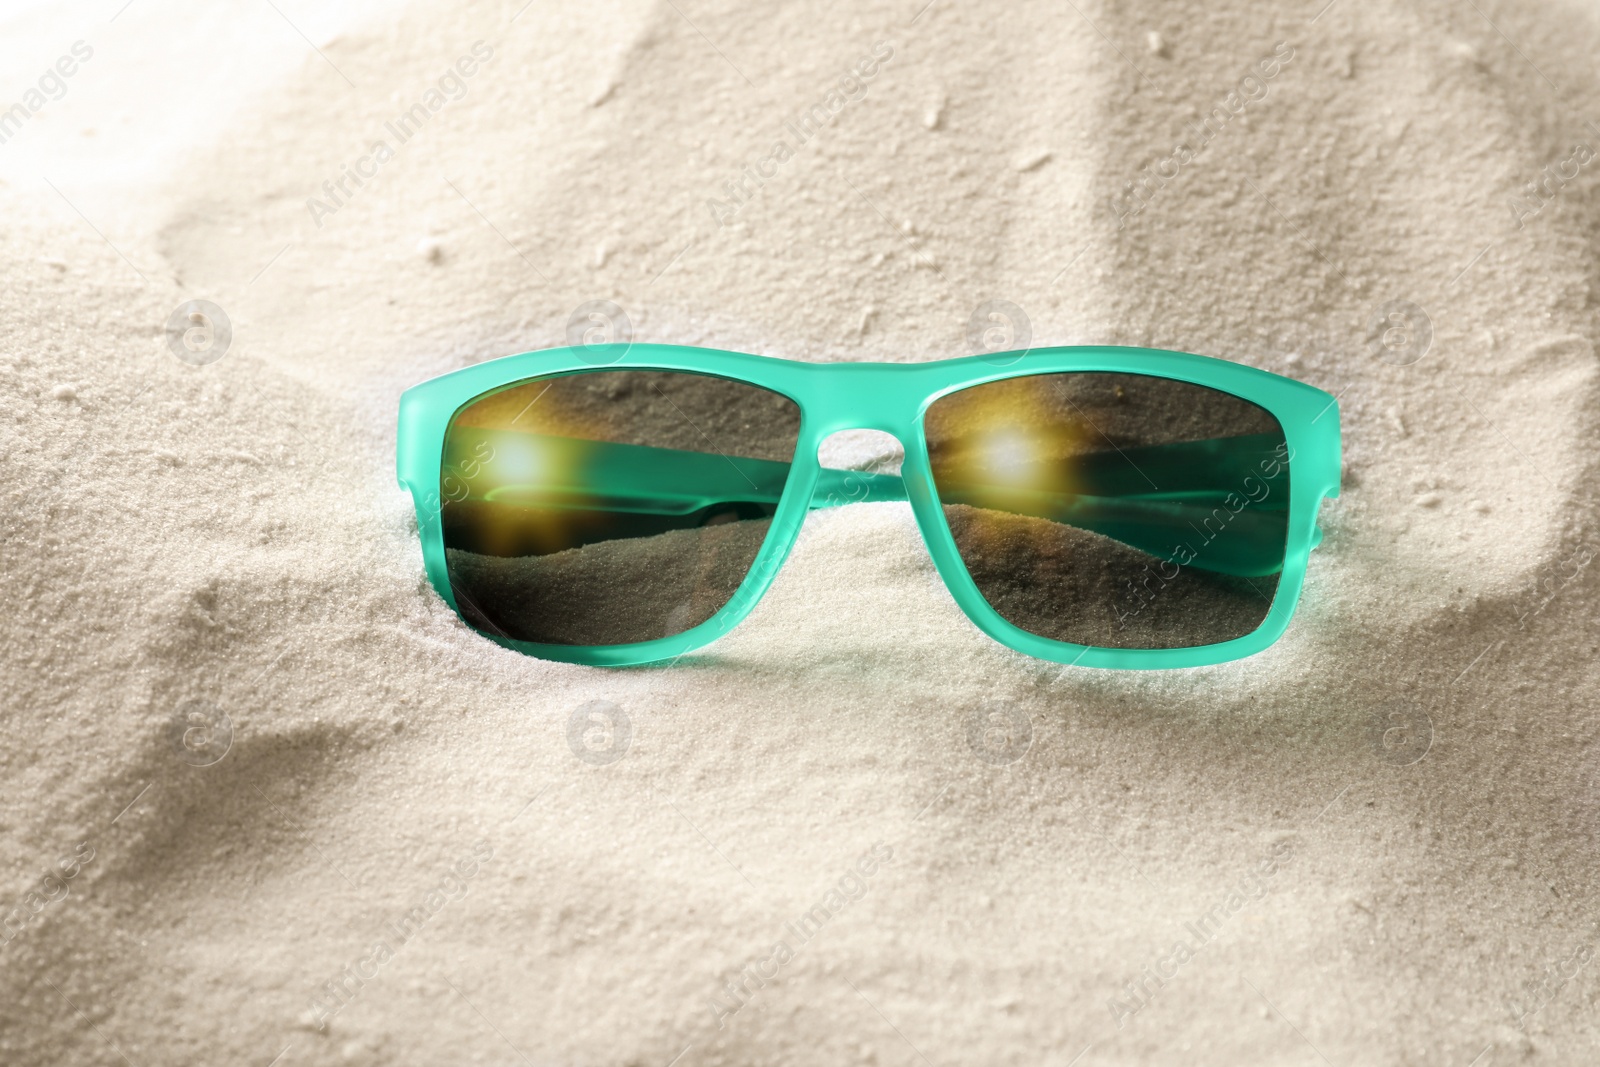 Photo of Stylish sunglasses on white sand. Fashionable accessory